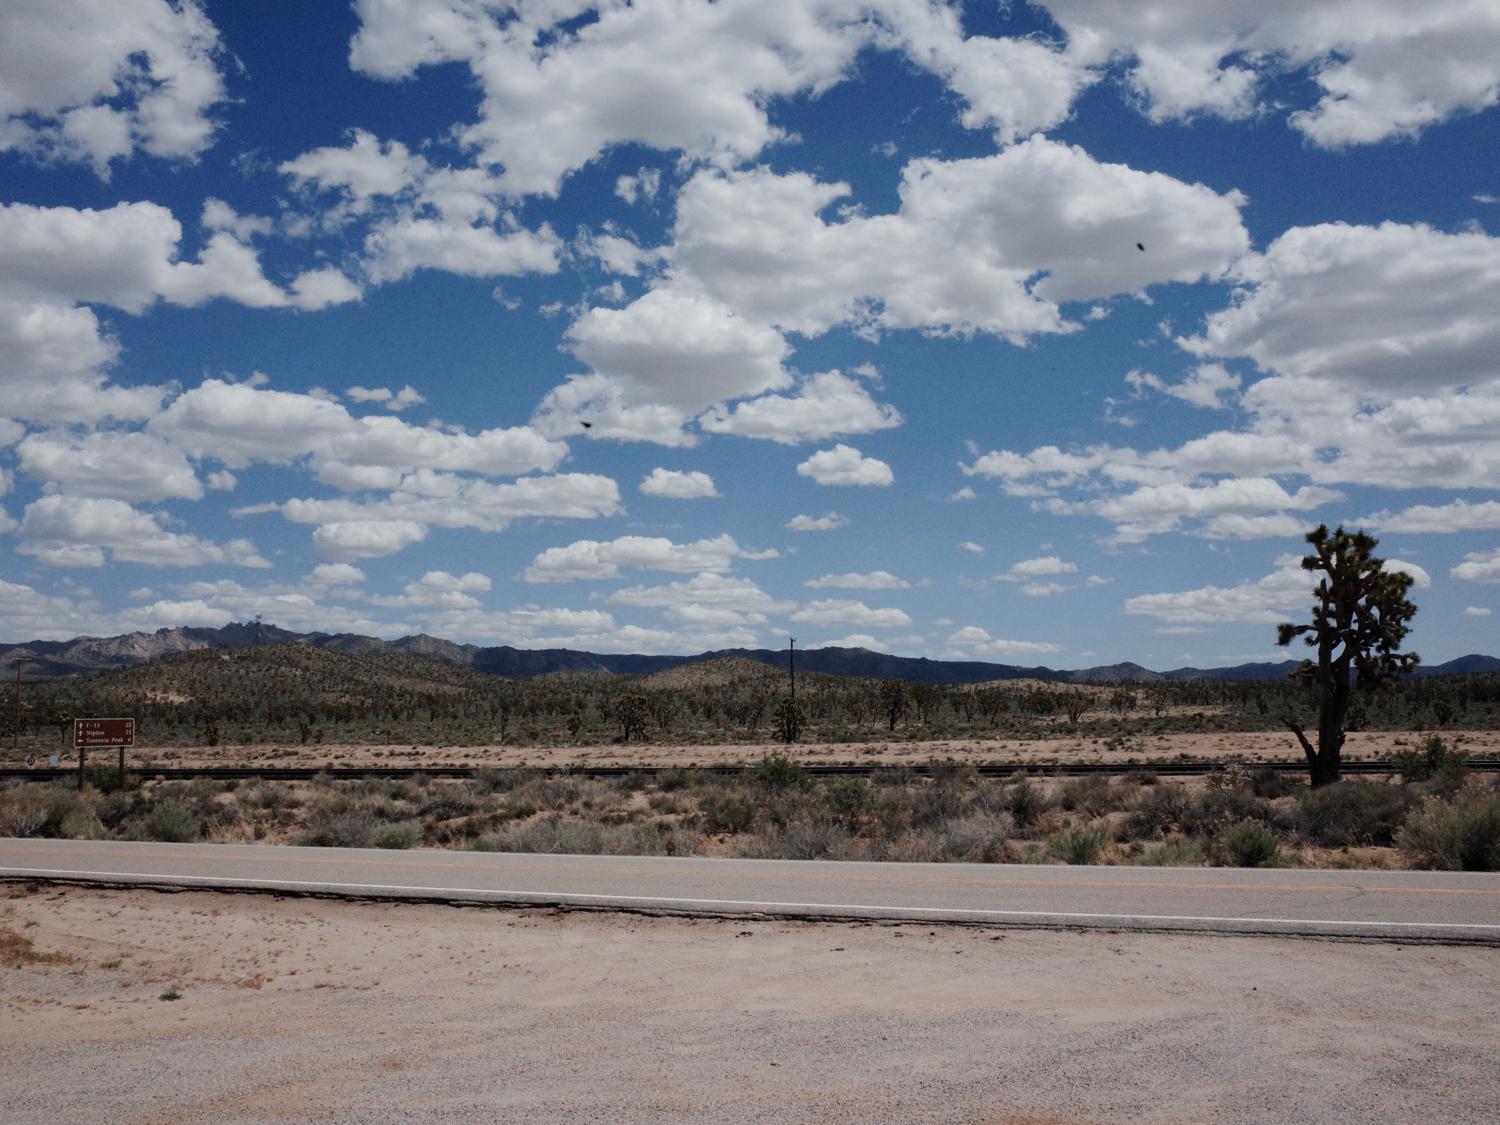 Mojave desert landscape